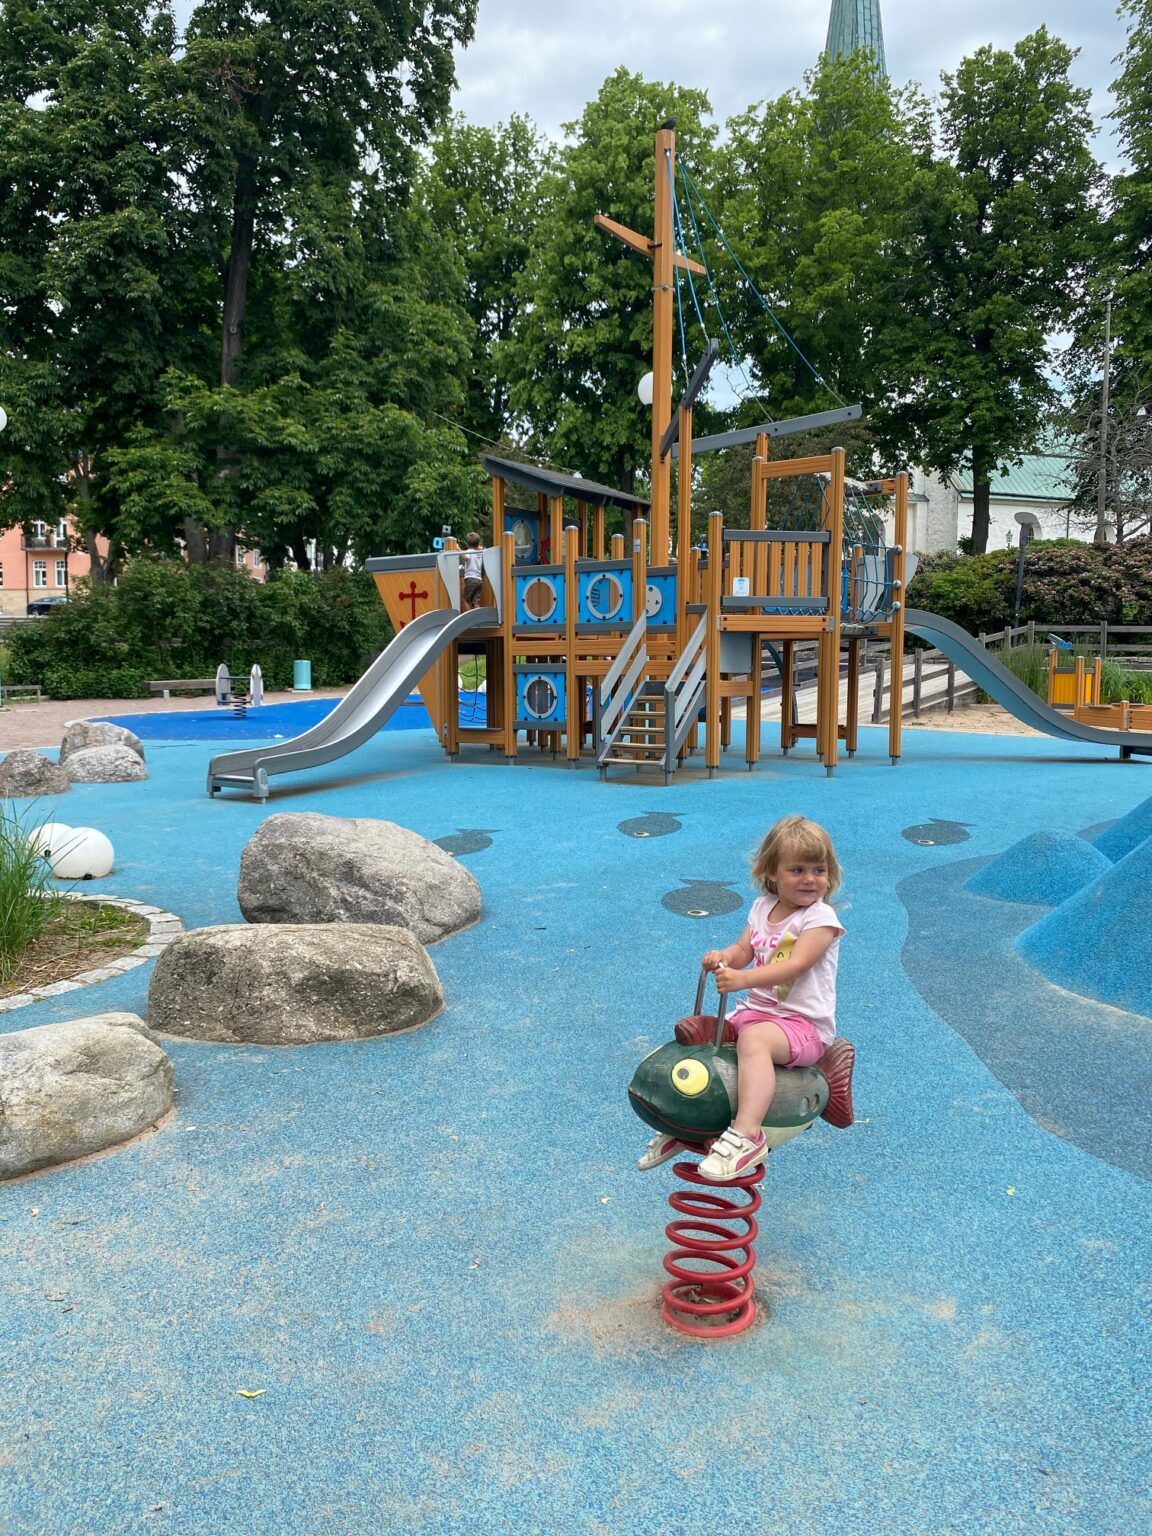 Barn sitter på ett gundjur i form av en fisk i en lekpark. Lekparkens underlag är blått och i bakgrunden finns en stor klätterställning i form av en båt.